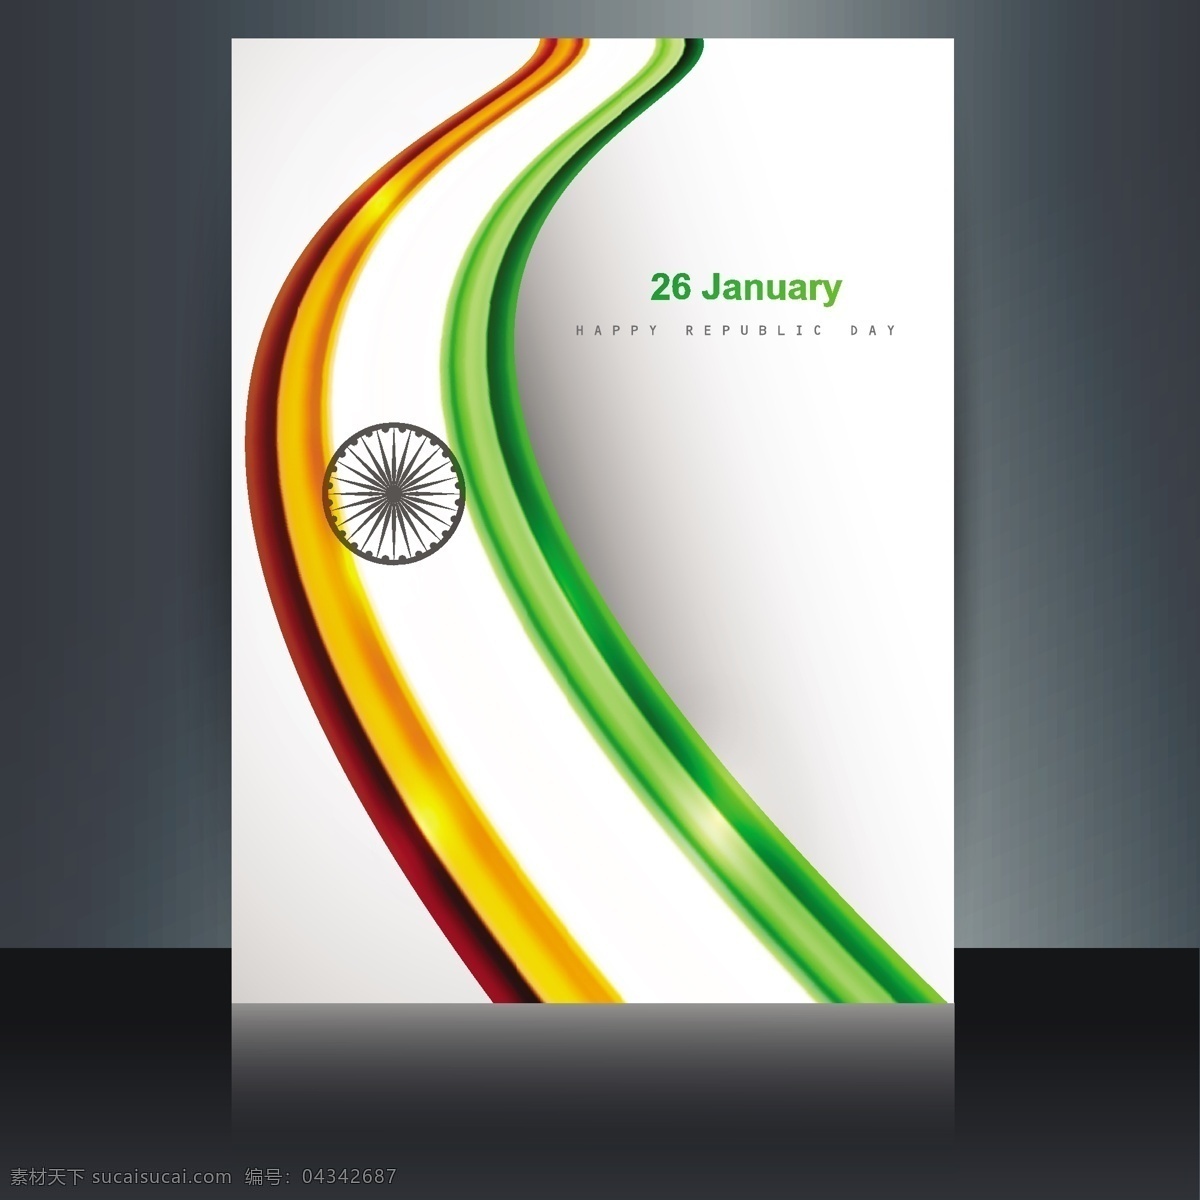 印度 国旗 小册子 背景 摘要 节日 车轮 和平 印度国旗 独立日 国家 自由 一天 政府 波浪 爱国 一月 独立 白色